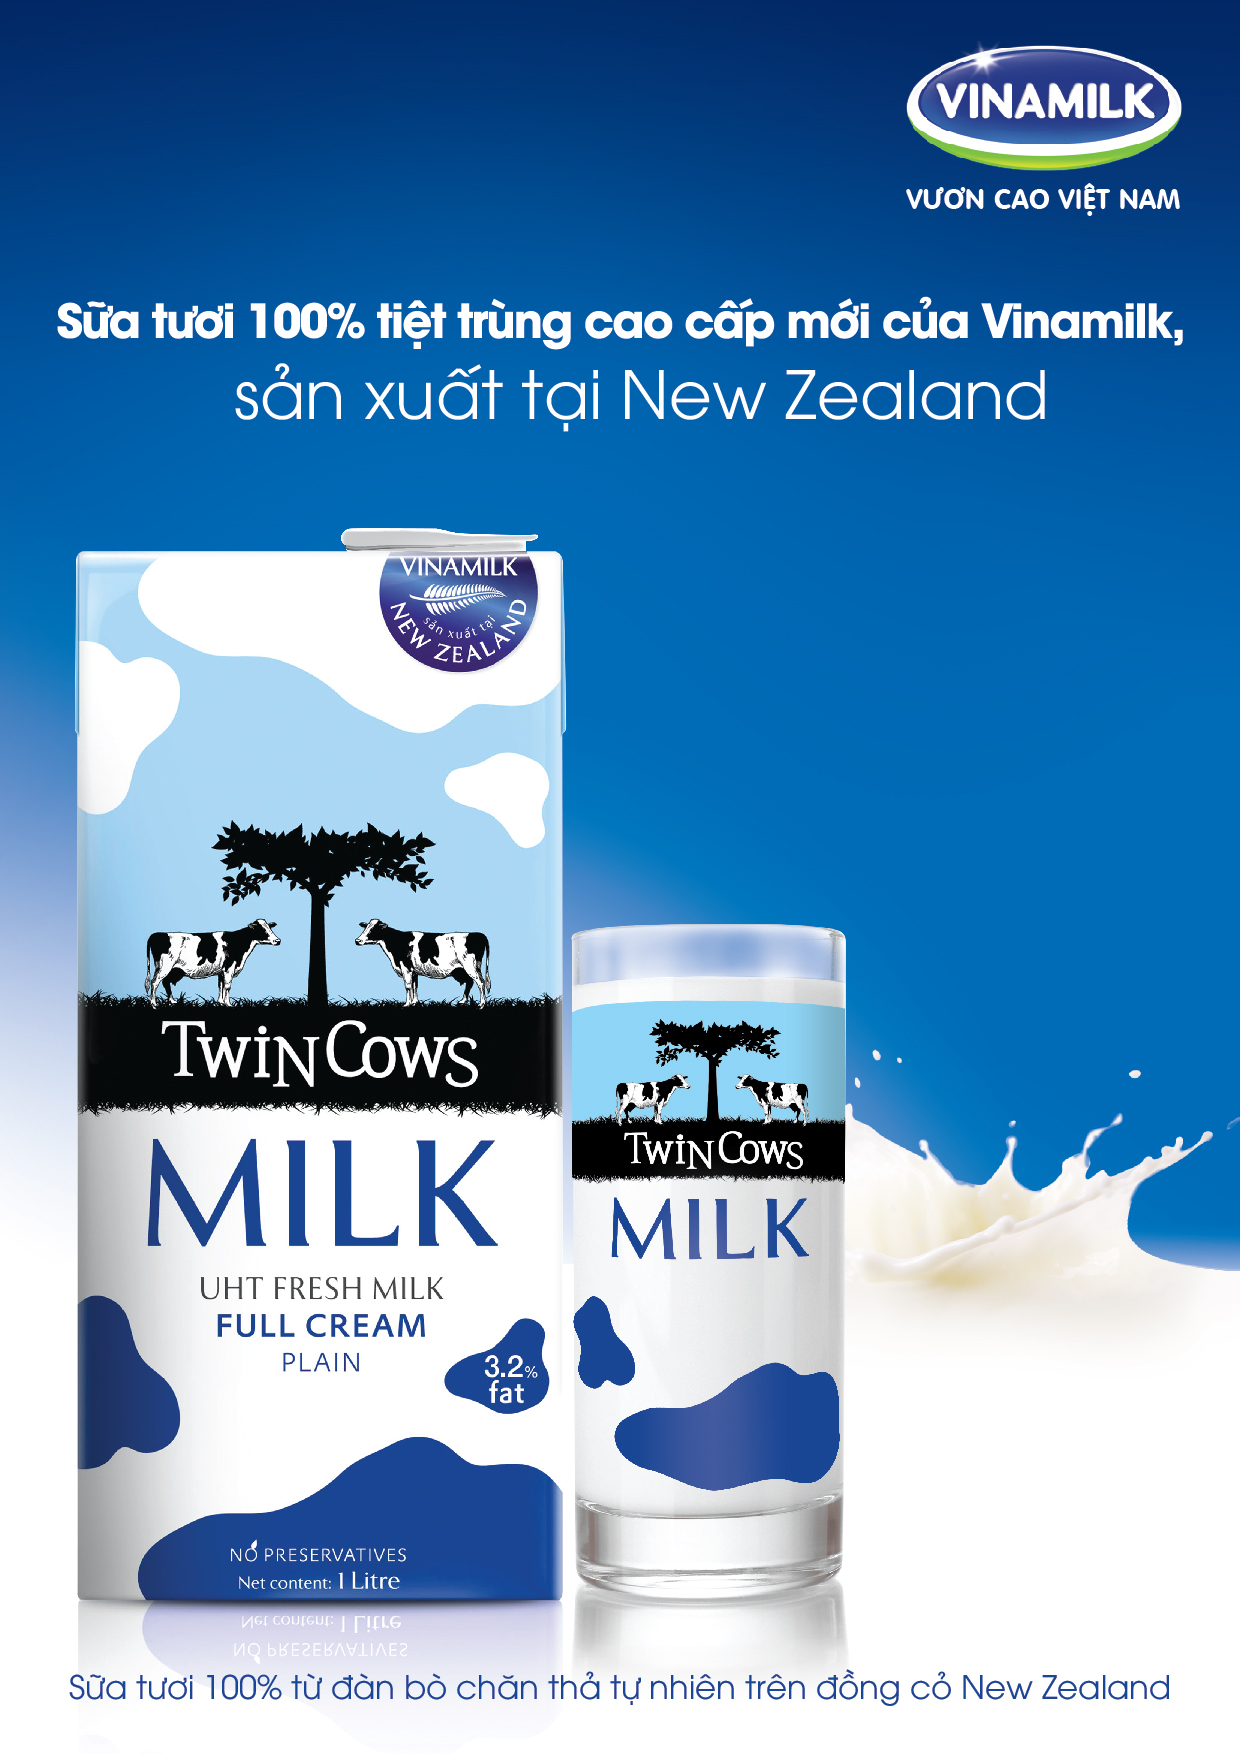 Sữa tươi tiệt trùng Twin Cows - Sản phẩm nhập khẩu từ New Zealand